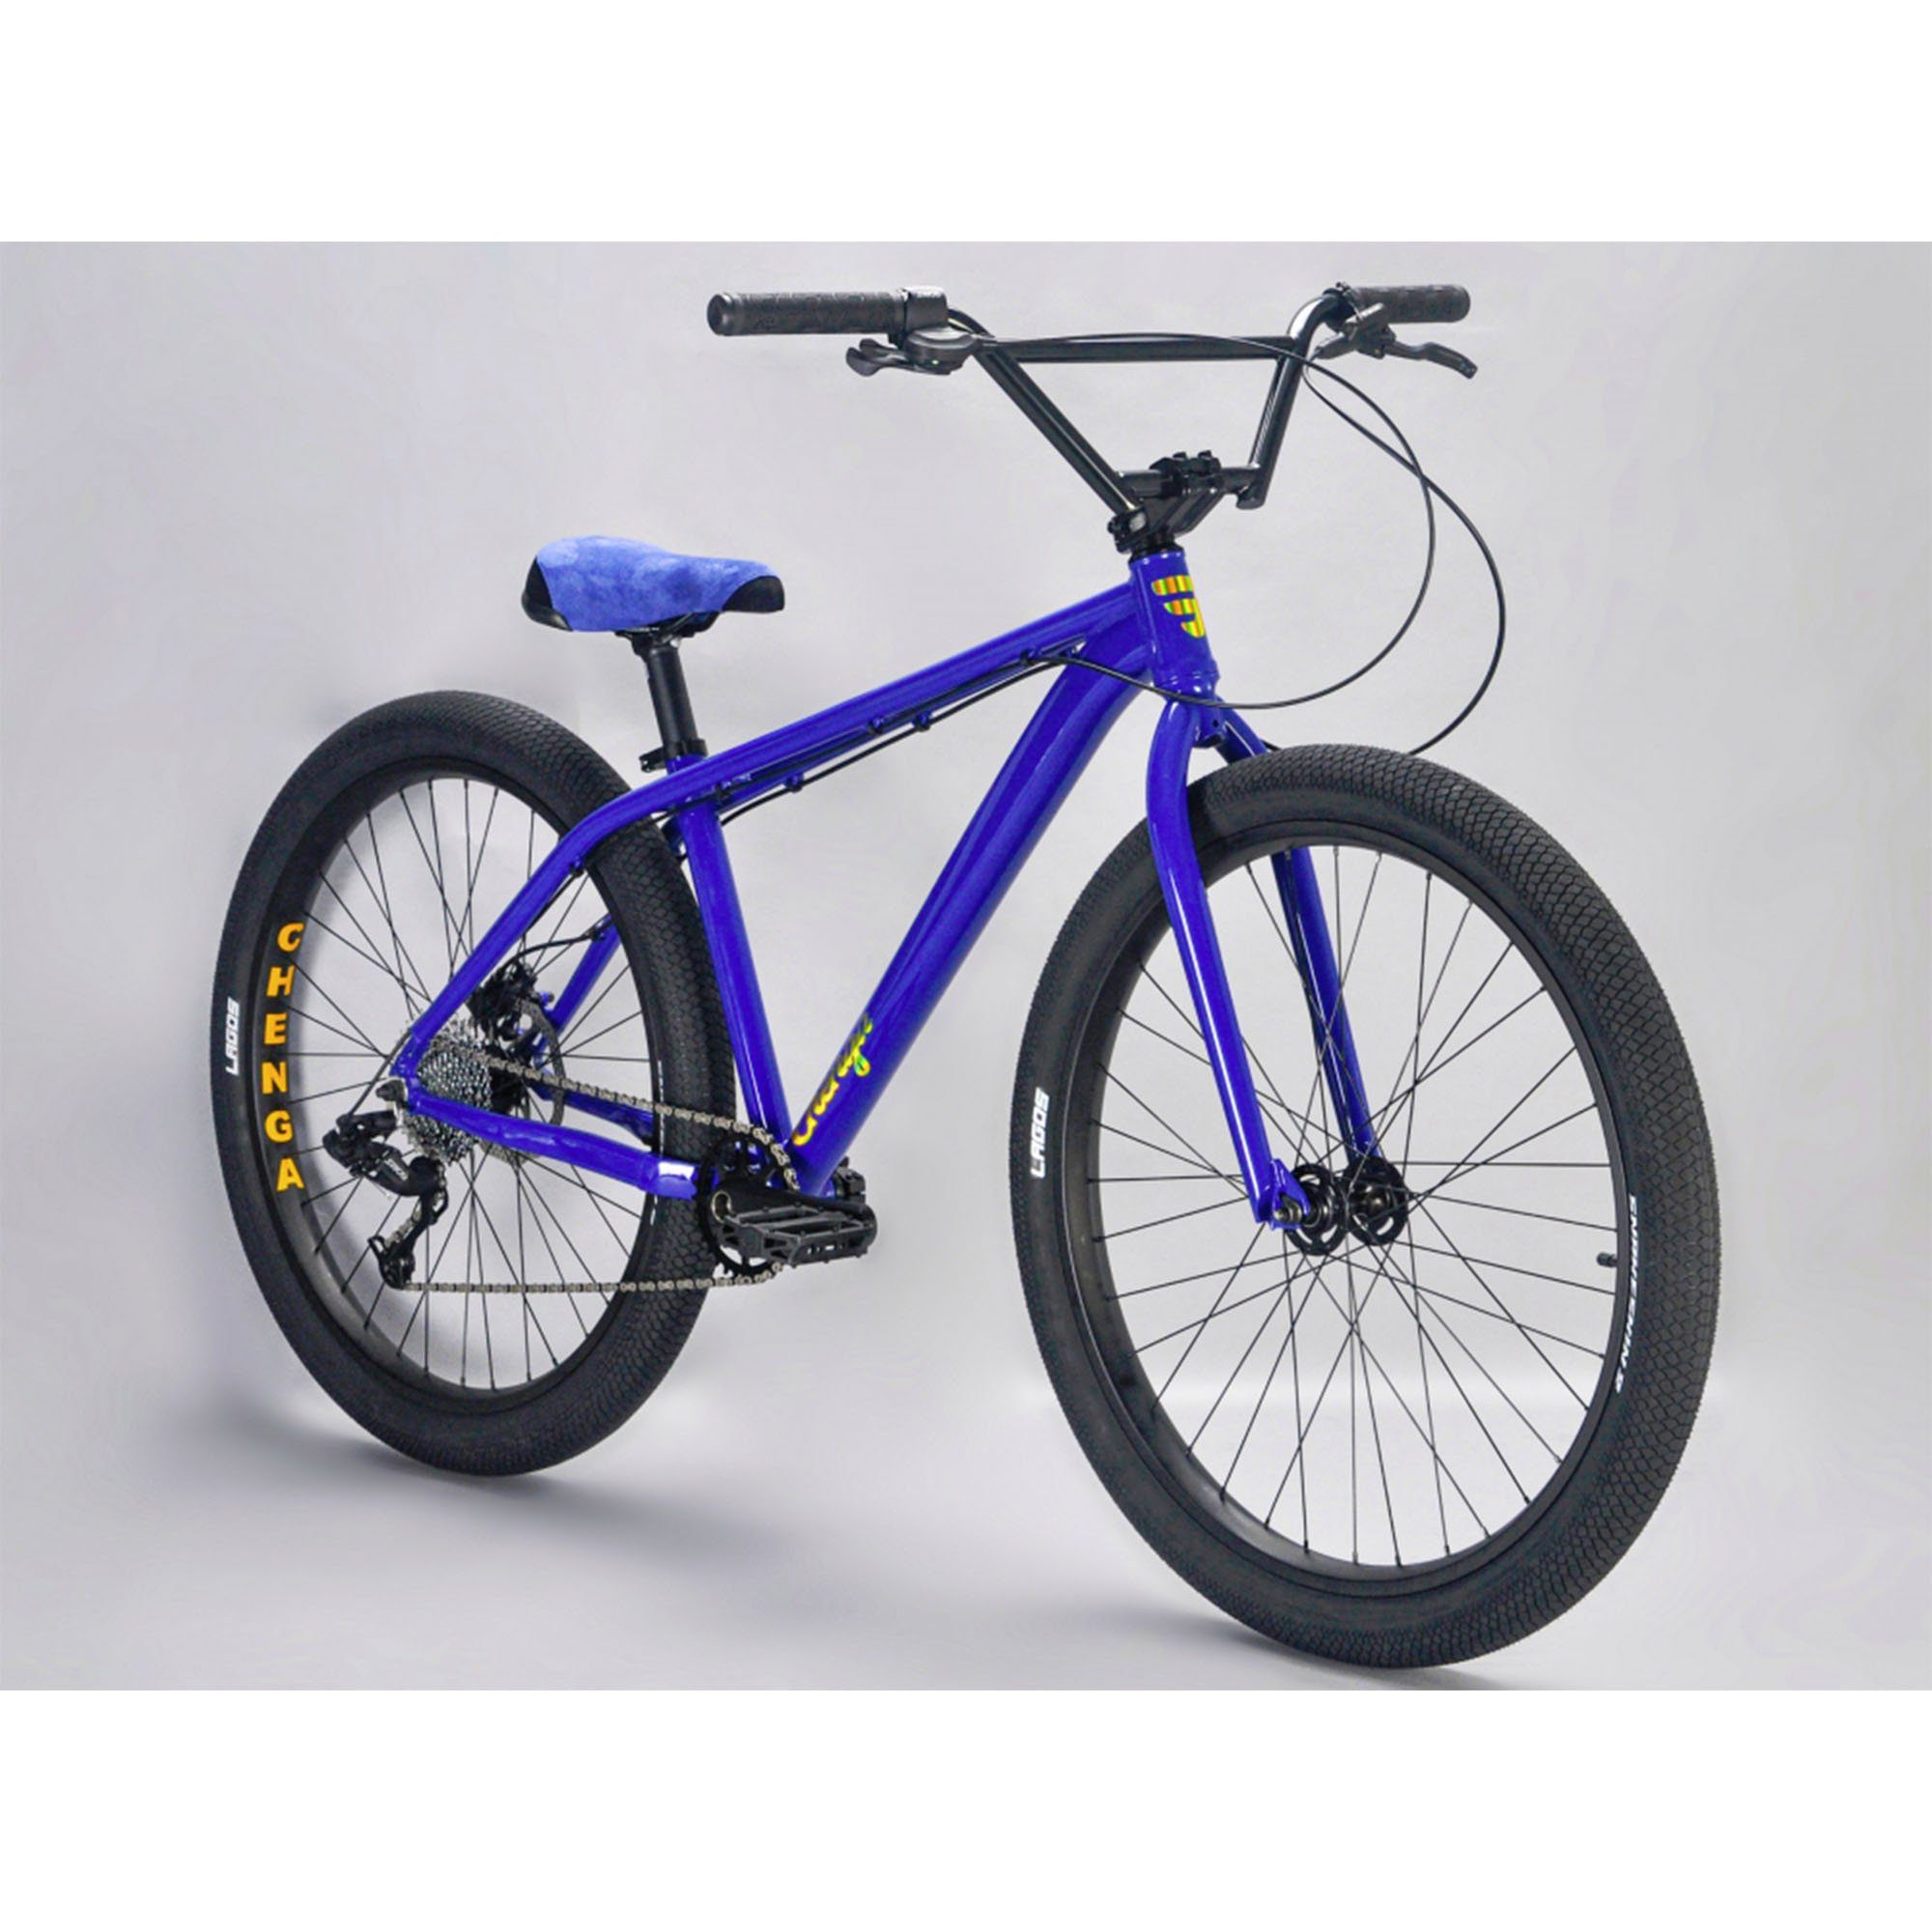 Mafiabikes Mountainbike »Chenga«, 1 Gang XLE Schaltwerk, ohne Schaltung,  27,5 Zoll Wheelie Bike für Jugendliche und Erwachsene ab 155 cm Körpergröße  Freestyle Fahrrad online kaufen | OTTO